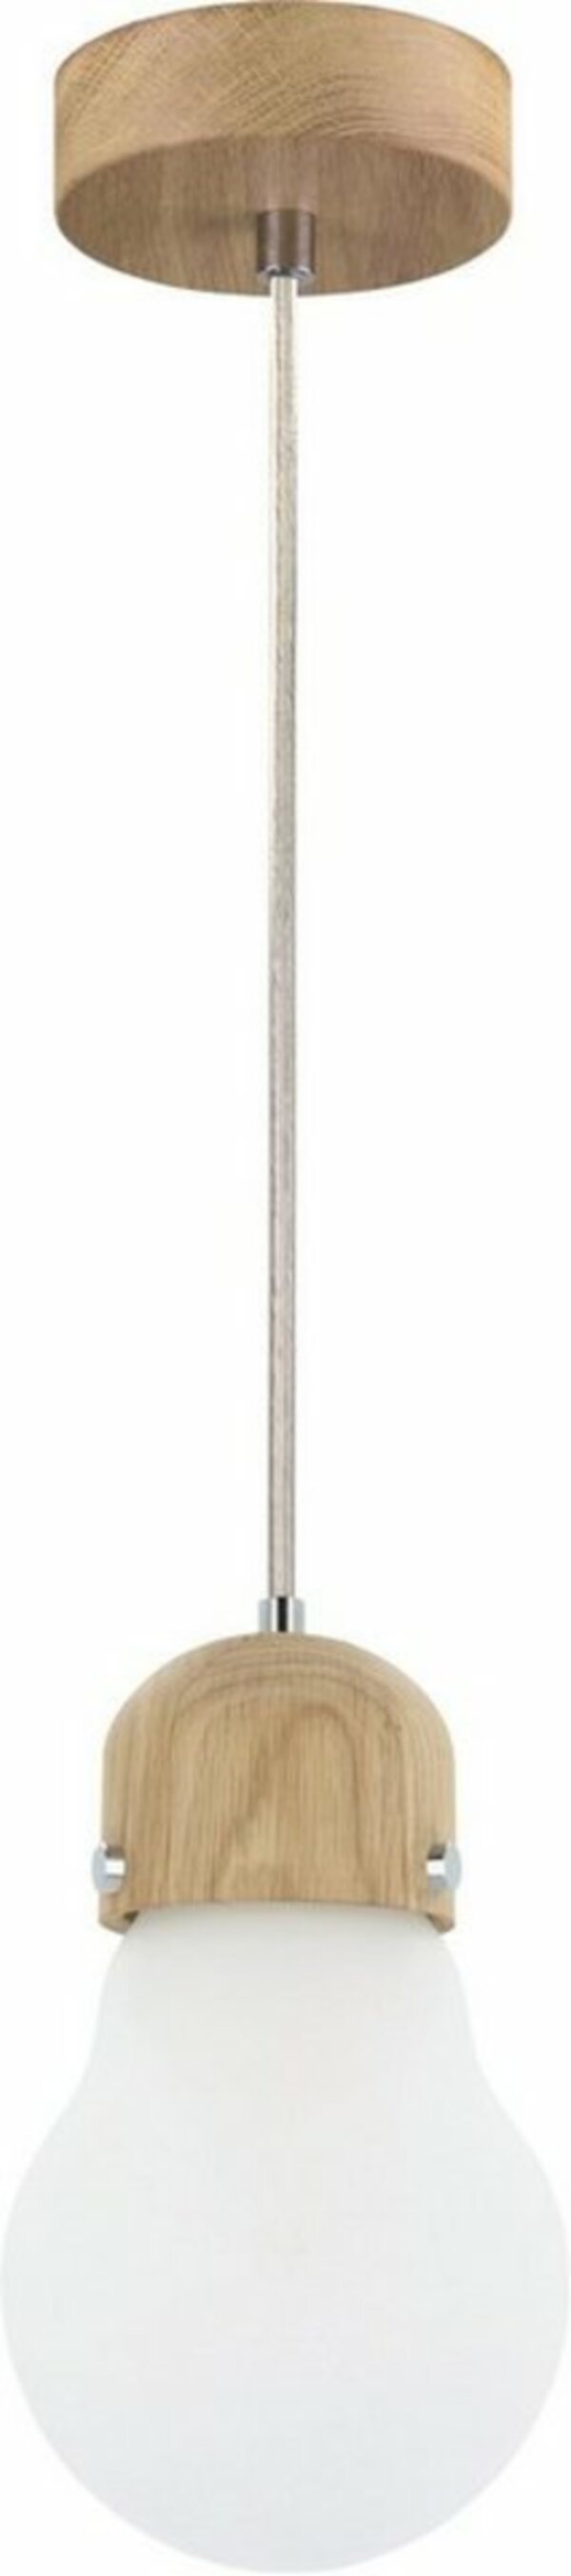 Bild 1 von BRITOP LIGHTING Pendelleuchte »BULB WOOD«, Hängeleuchte, Naturprodukt aus Eichenholz, Nachhaltig mit FSC®-Zertifikat, Hochwertiger Schirm aus Glas, Kabel kürzbar, Made in EU